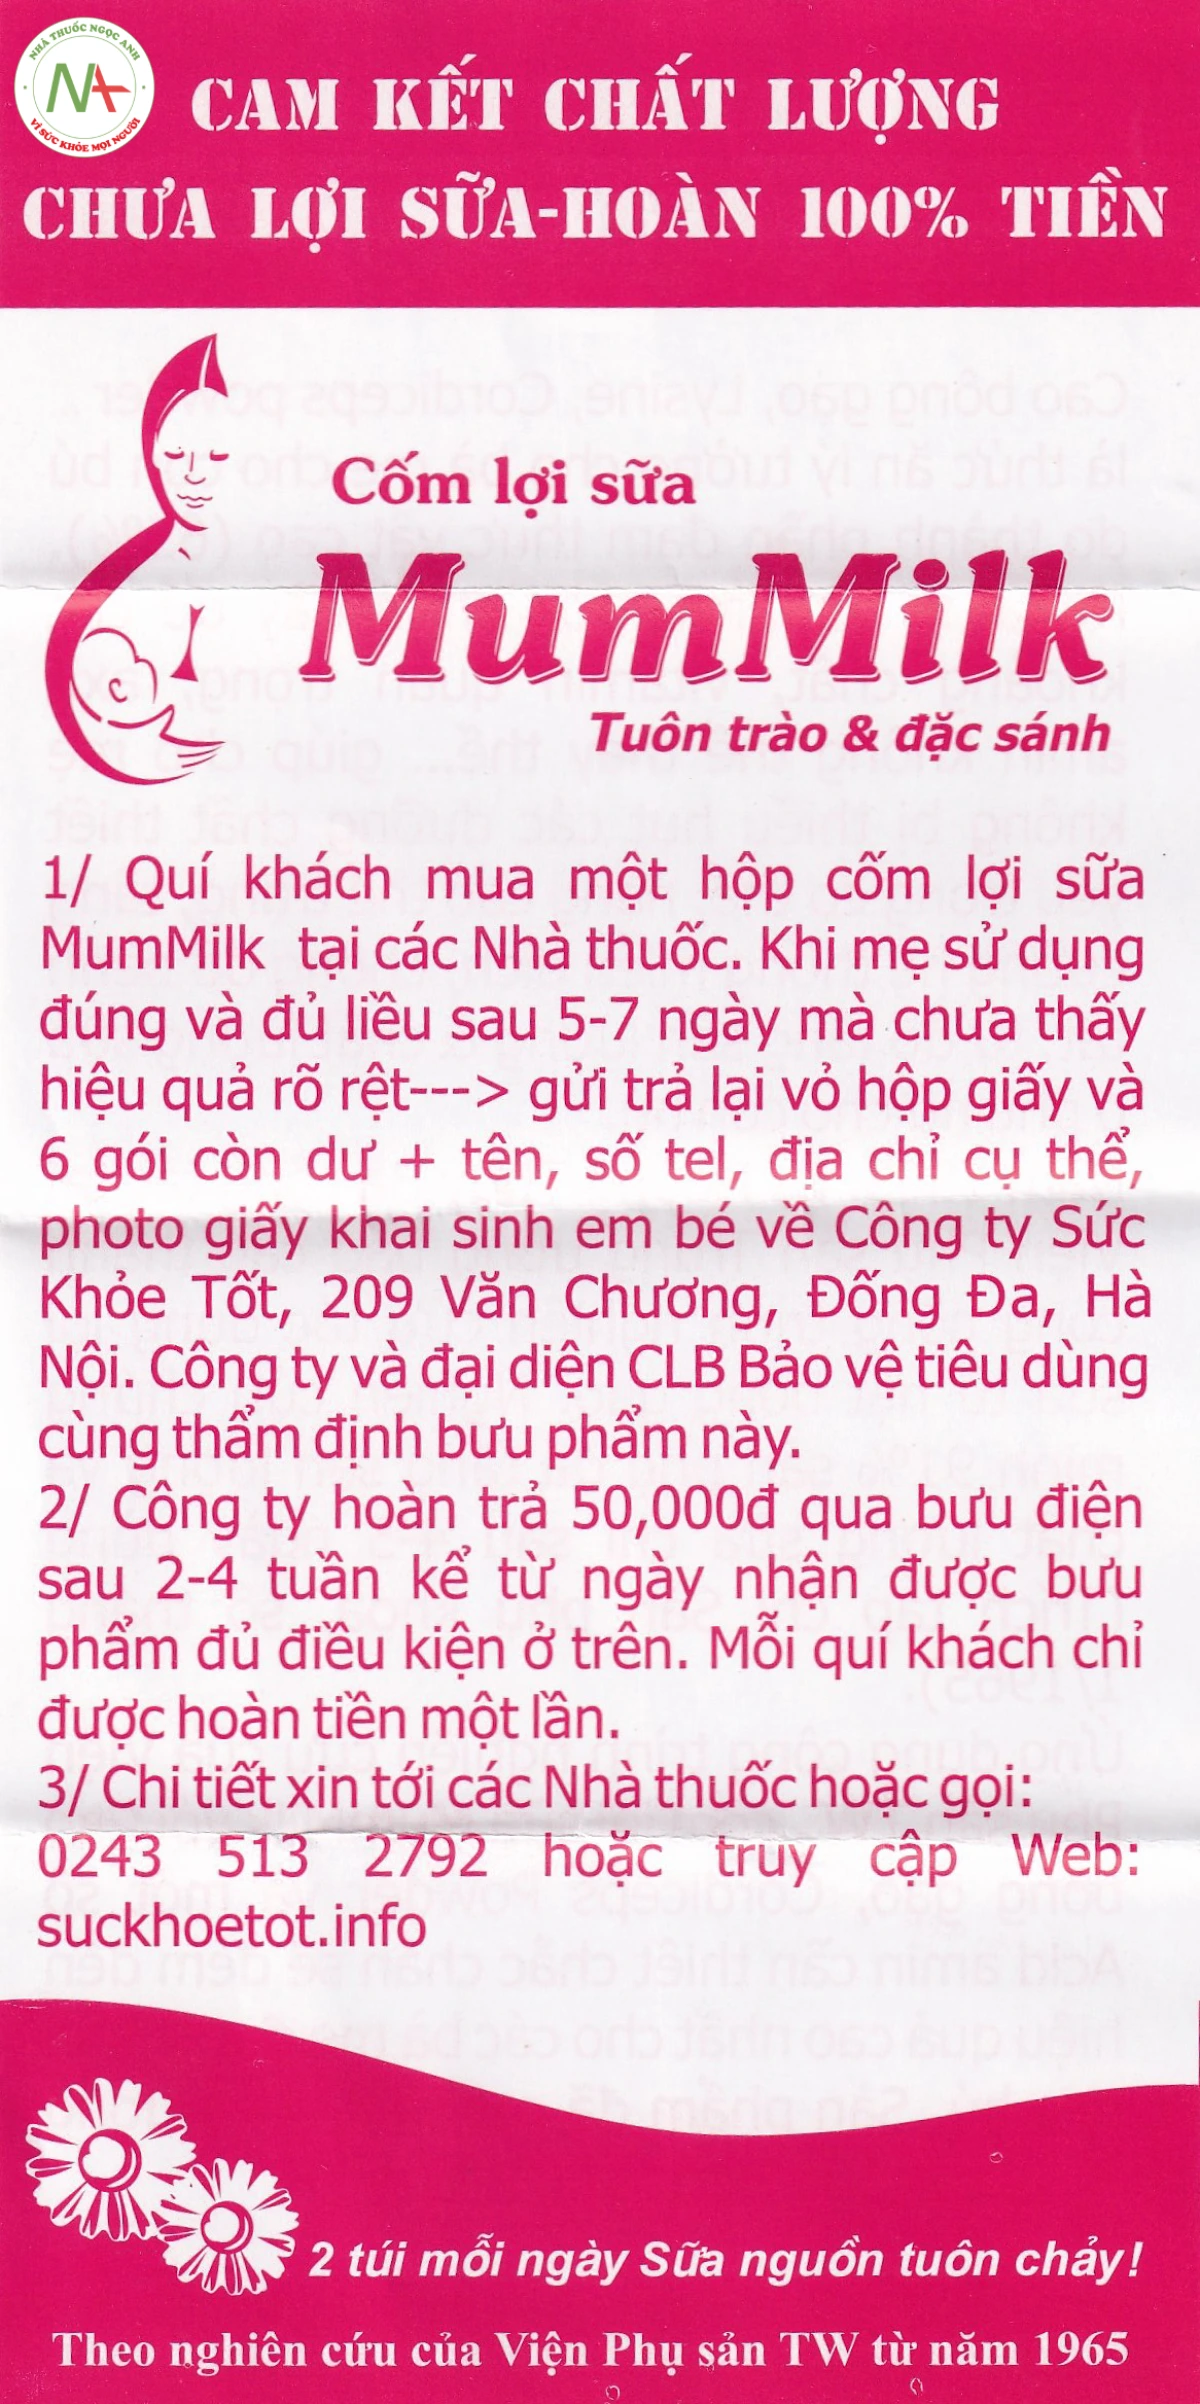 Hướng dẫn sử dụng cốm lợi sữa mummilk